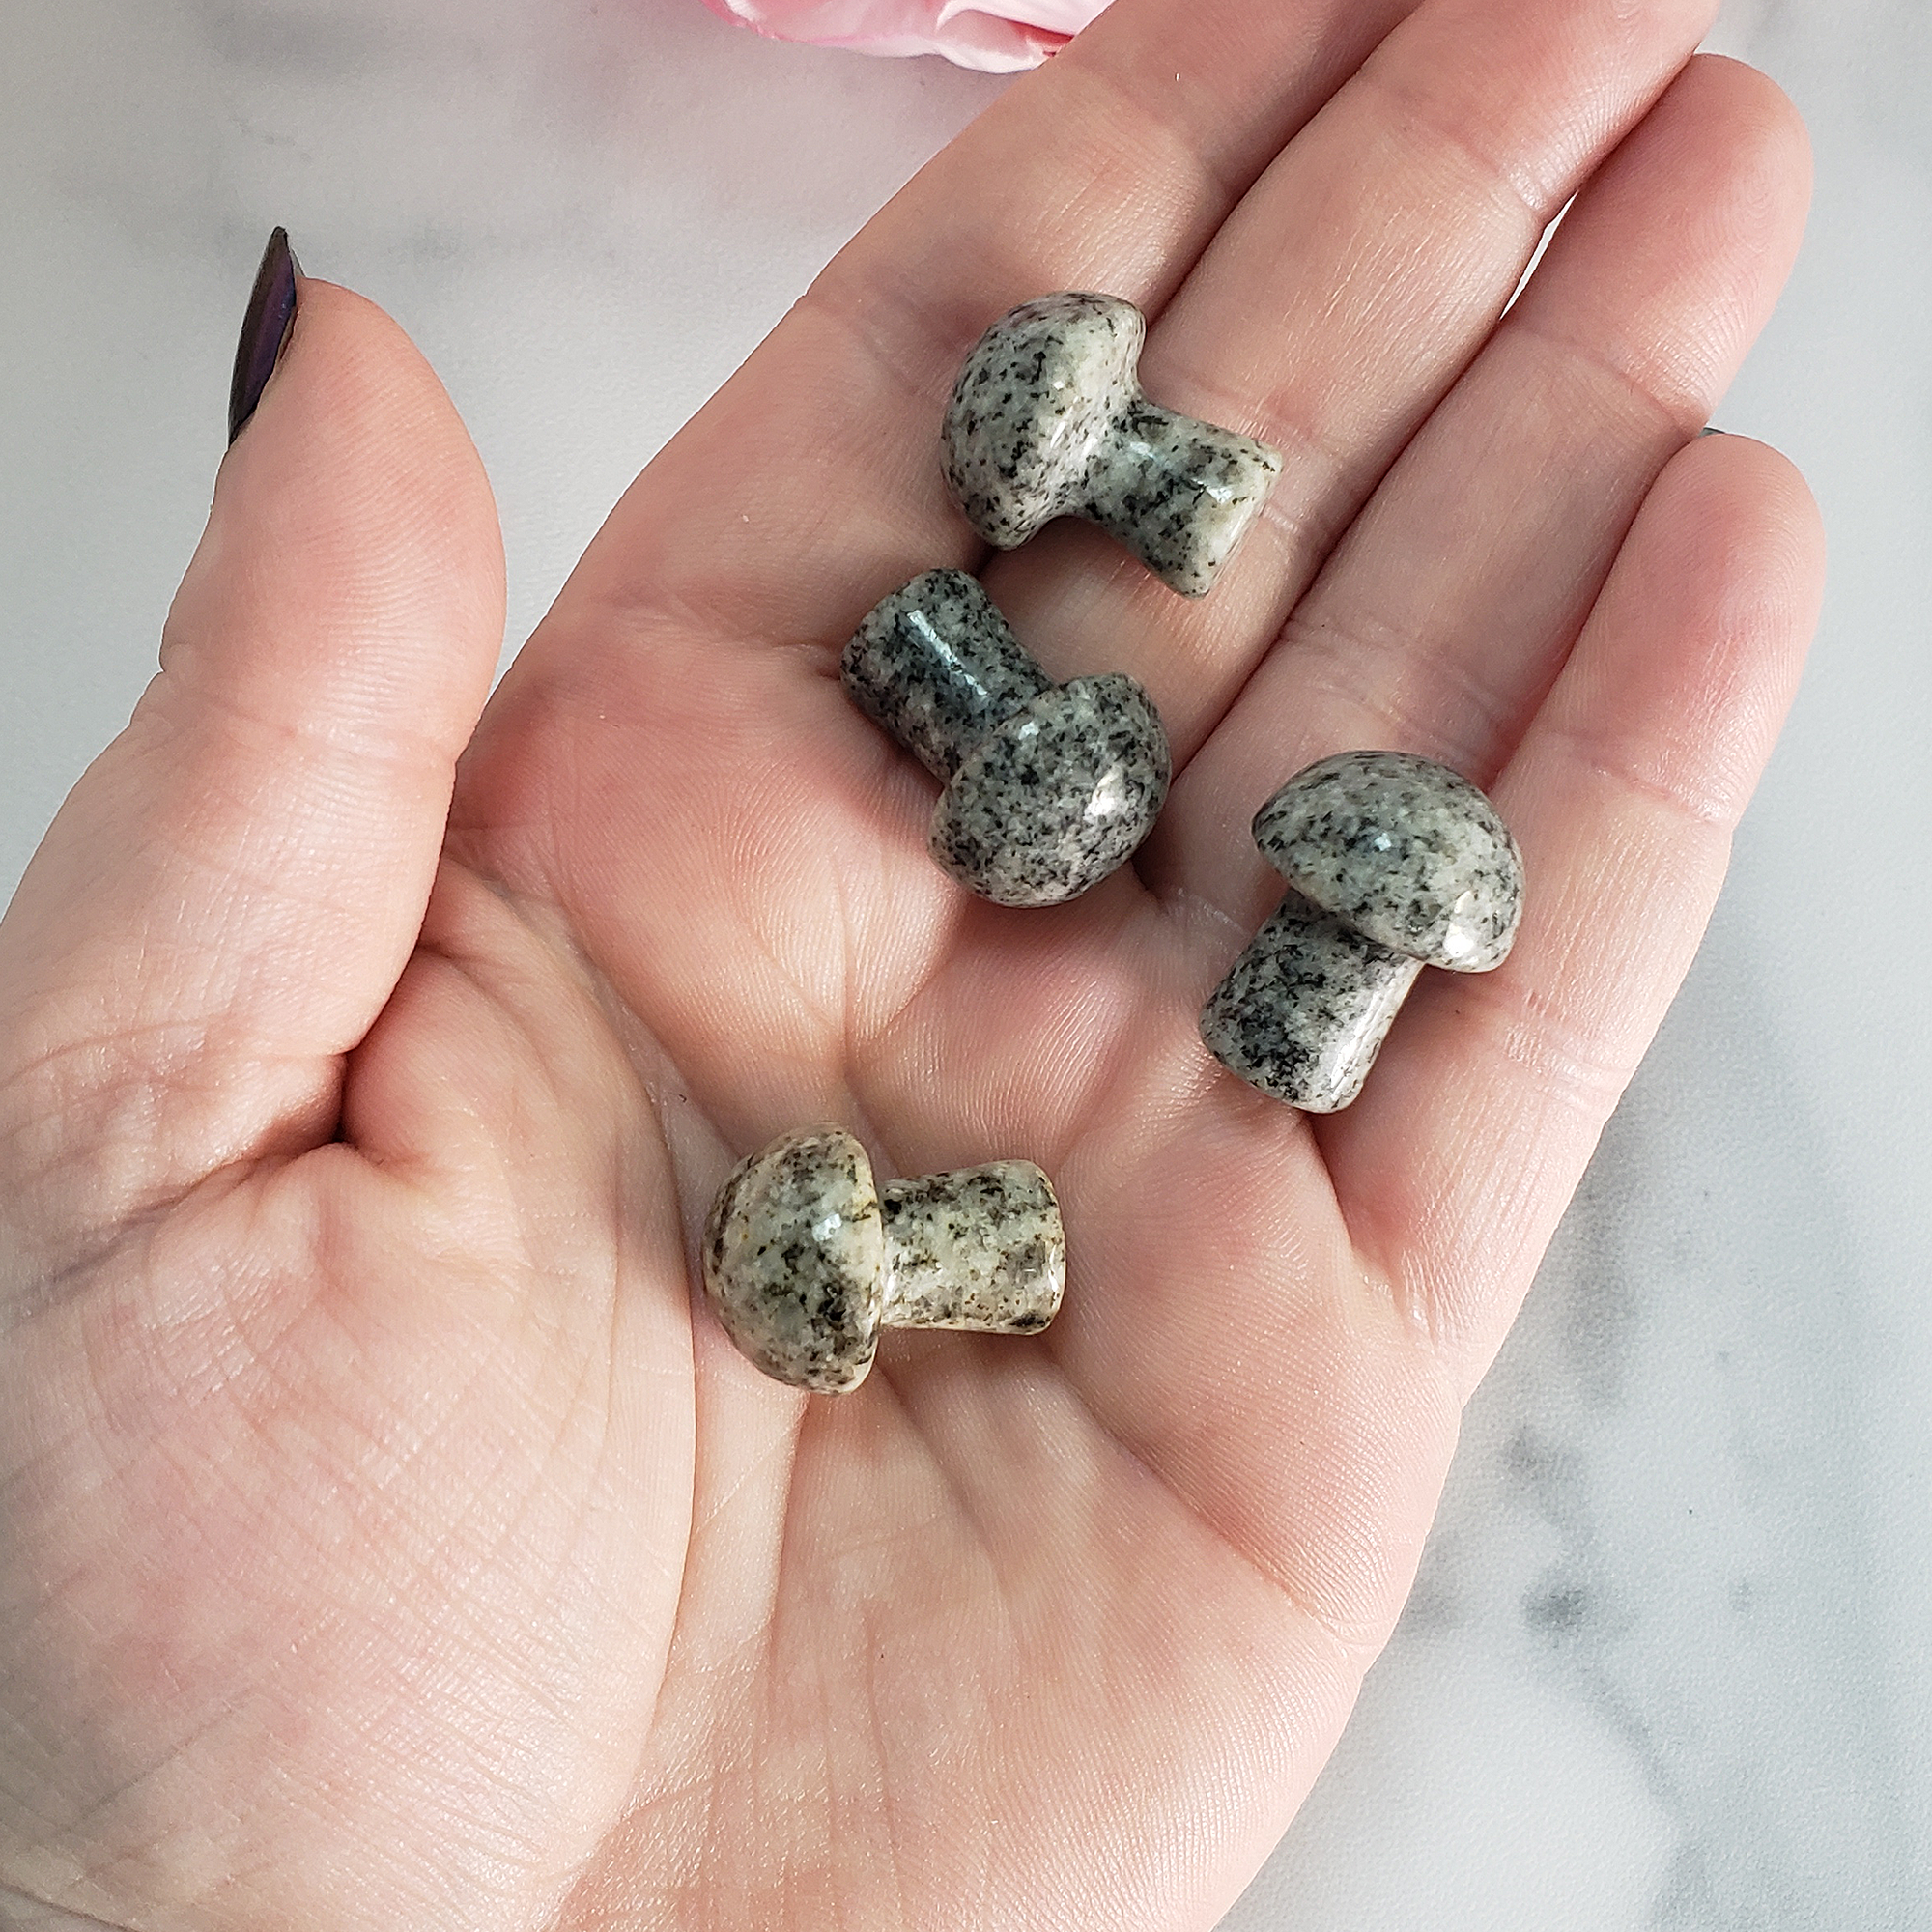 Granite Rock Natural Gemstone Mushroom Toadstool Mini Carving - Granite Stone Toadstools